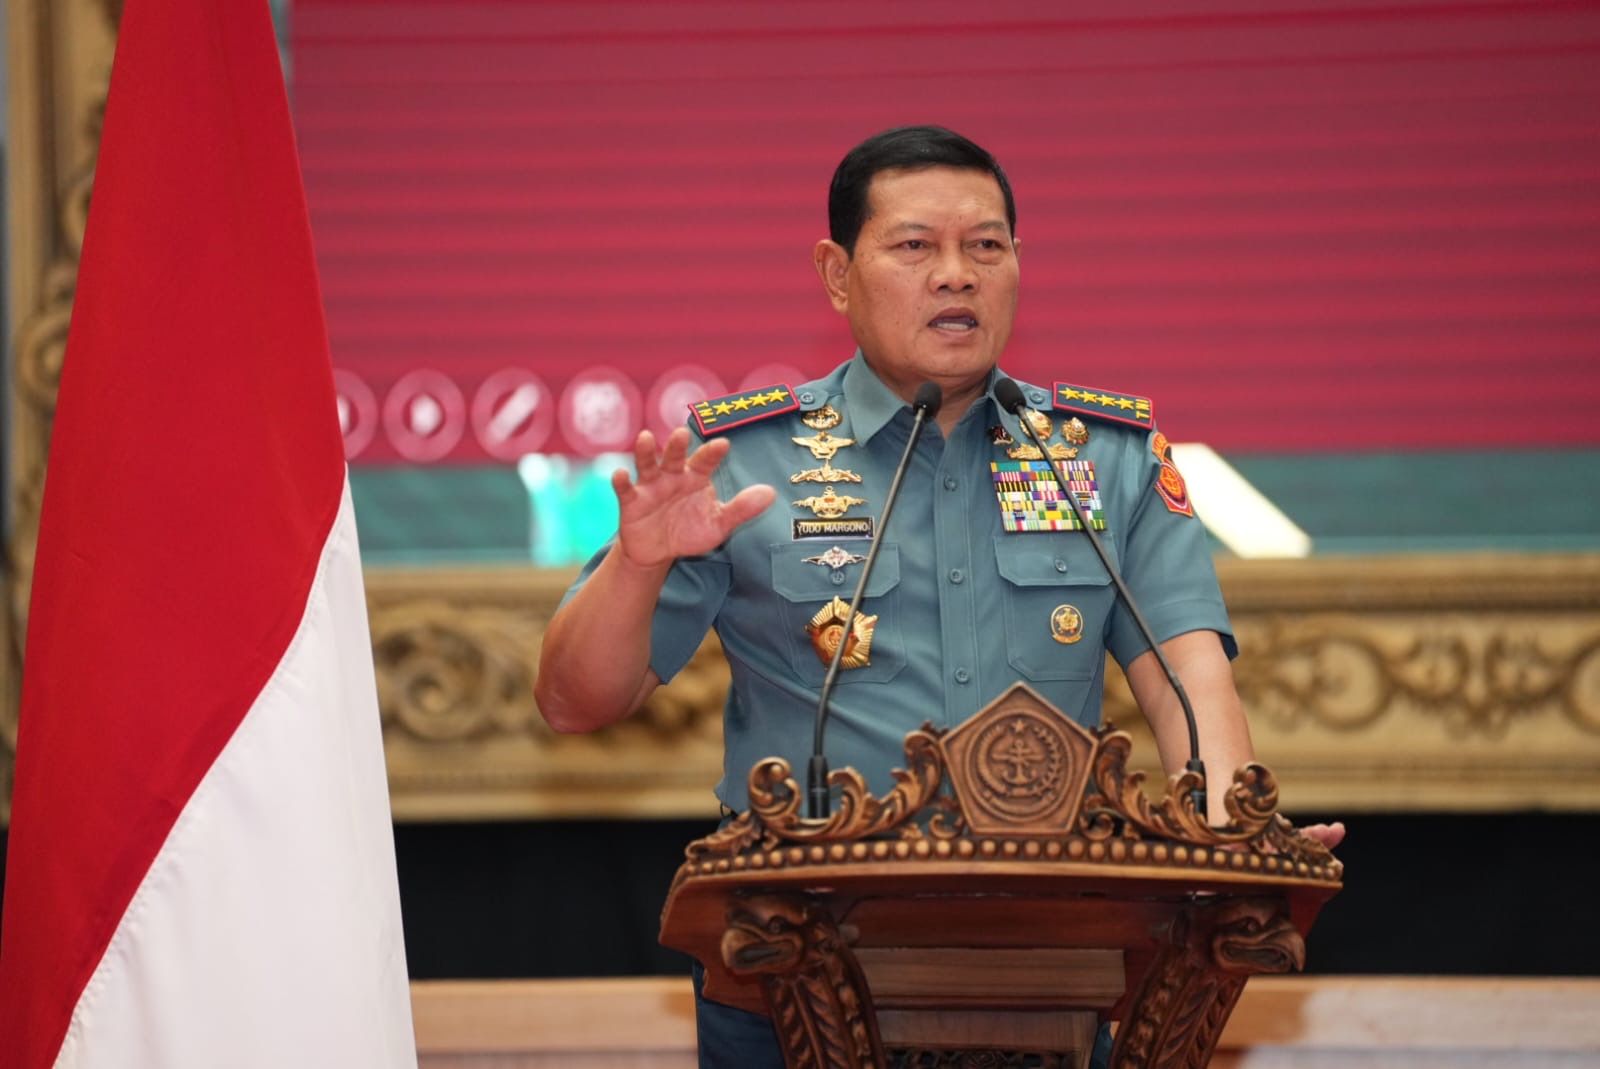 Penjualan Senpi oleh Prajurit Meningkat, Pengamat: Tanda Penegakan Hukum di TNI Belum Beri Efek Jera